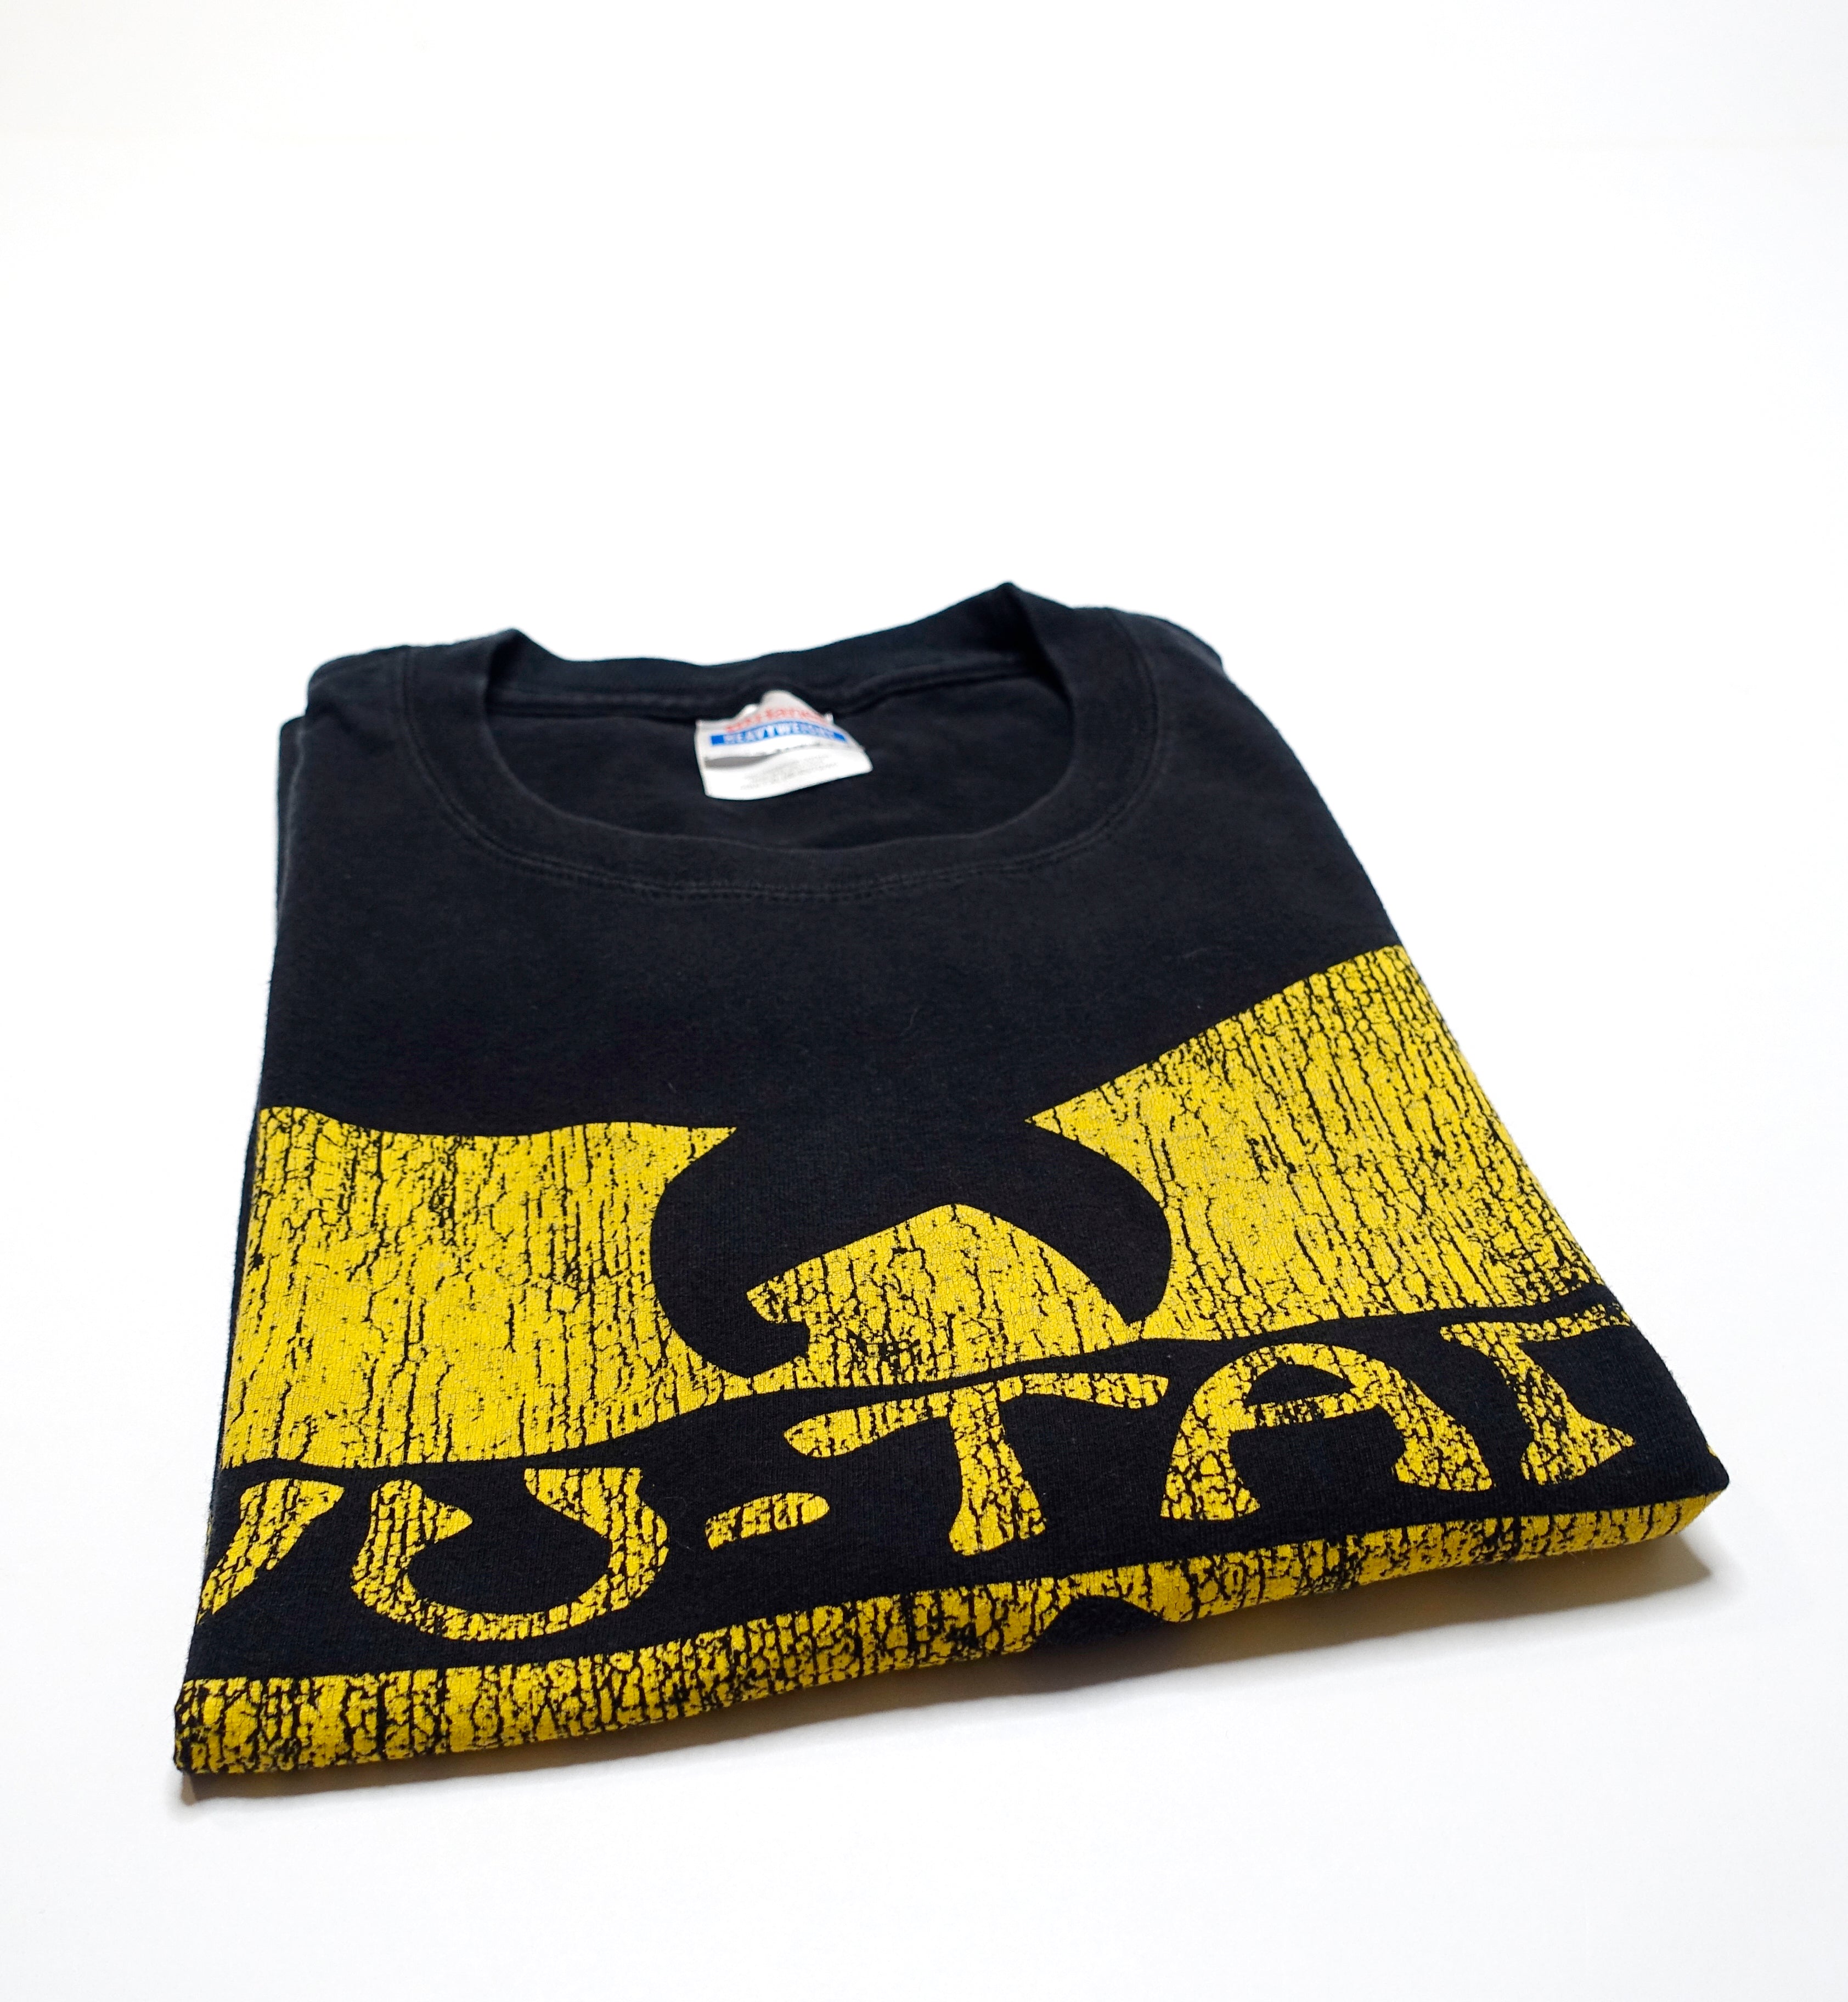 Wu-Tang Clan - "W" 2009 Shirt Size XL